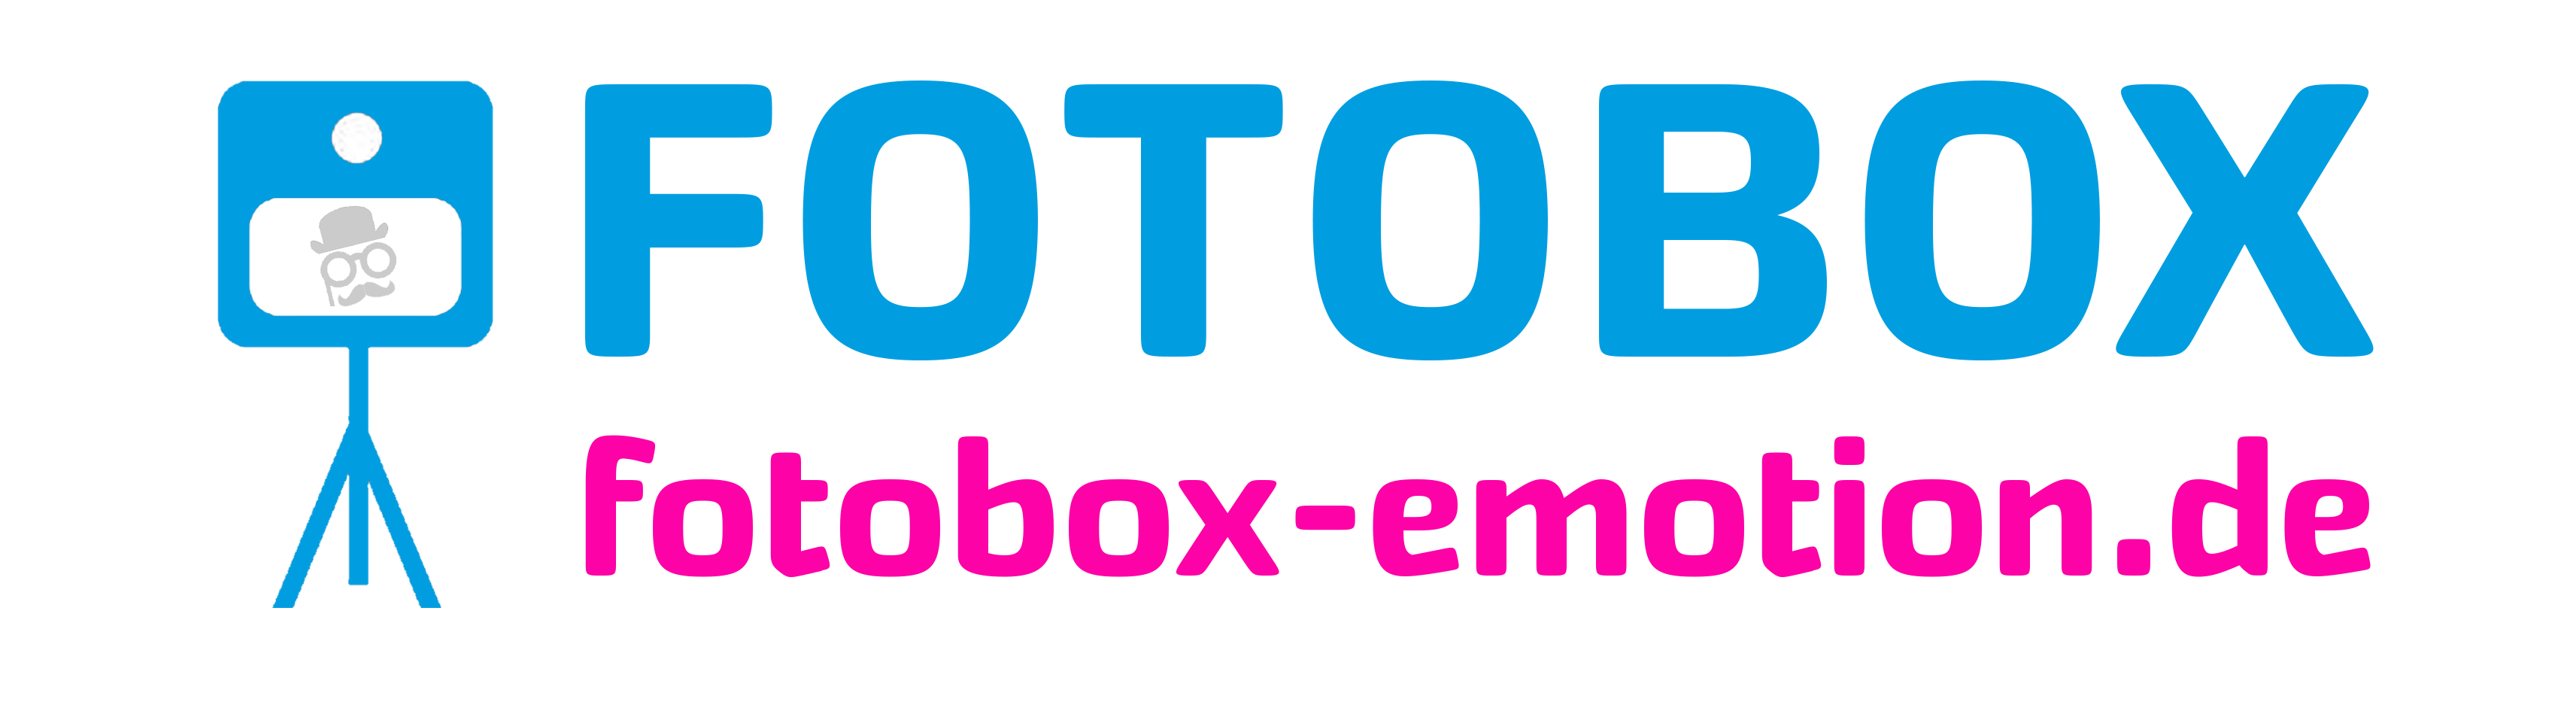 fotobox-emotion.de